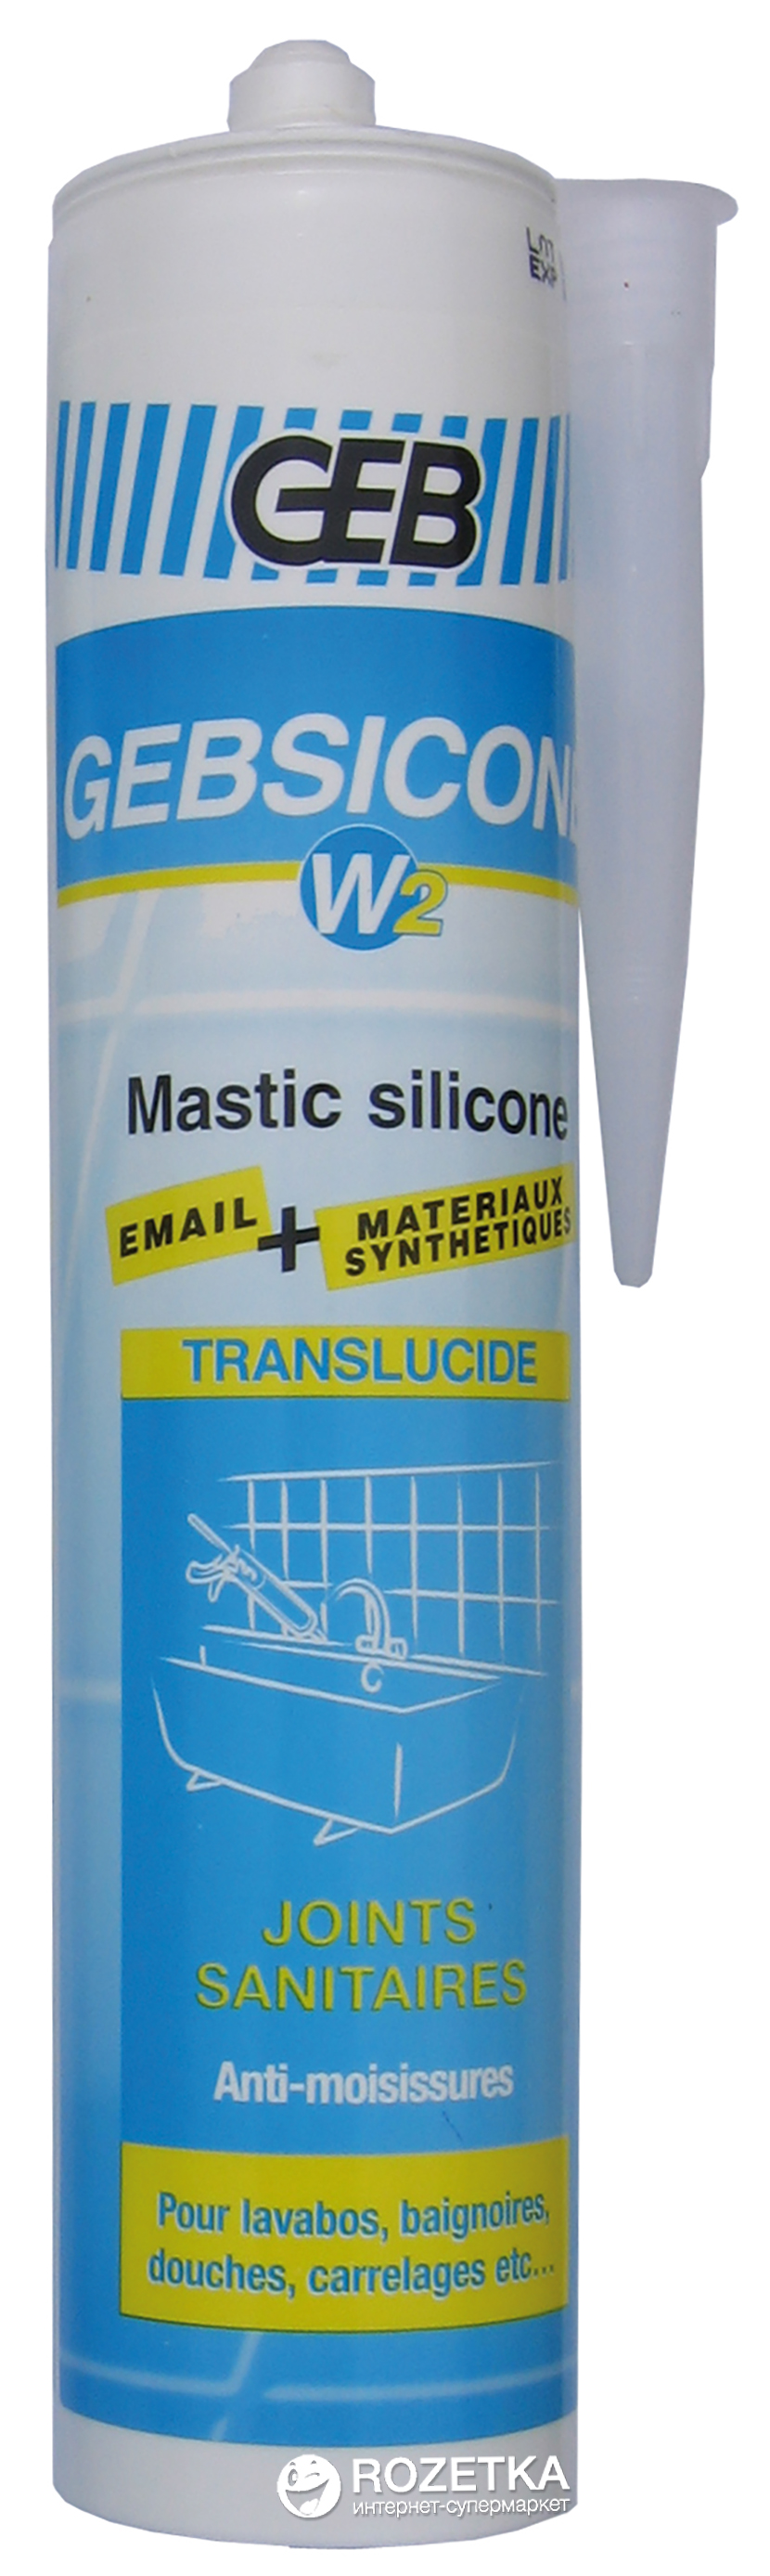 Mastic GEBSICONE Silicone BLANC 310ML